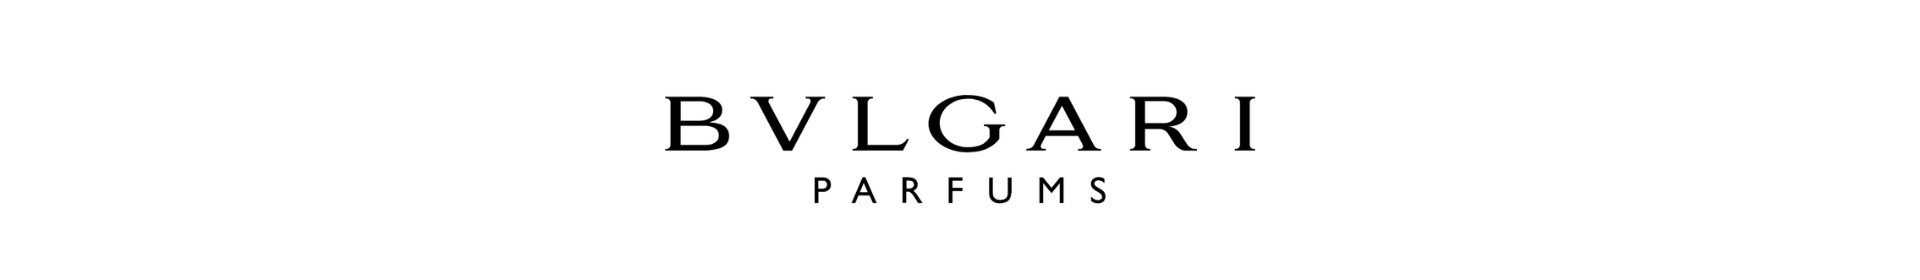 Perfumy Bvlgari logo